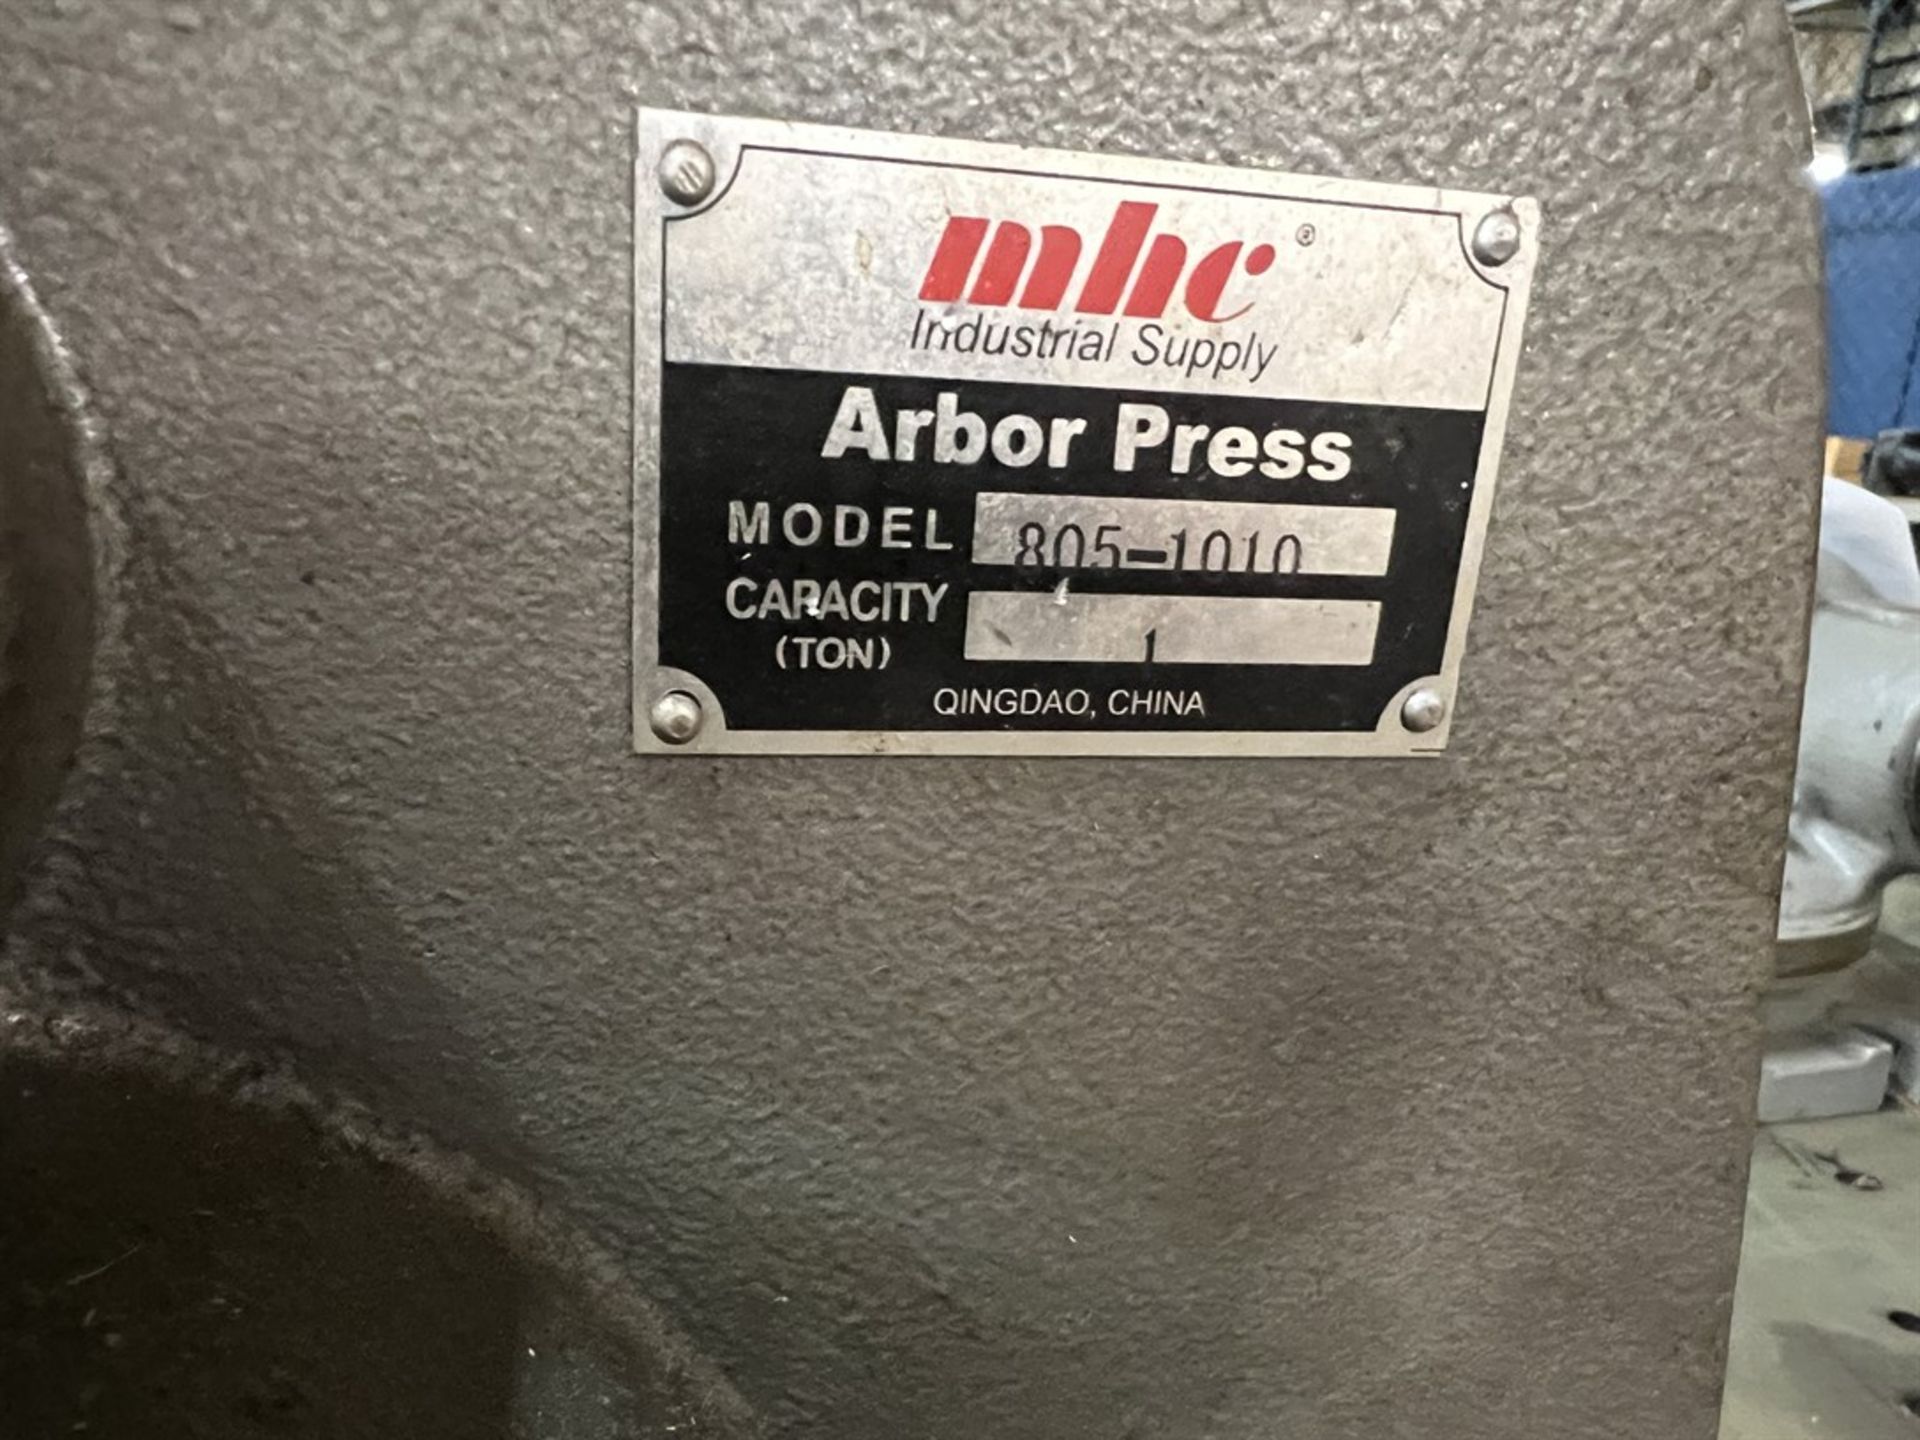 MHC 805-1010 1-Ton Arbor Press (Machine Shop) - Image 3 of 3